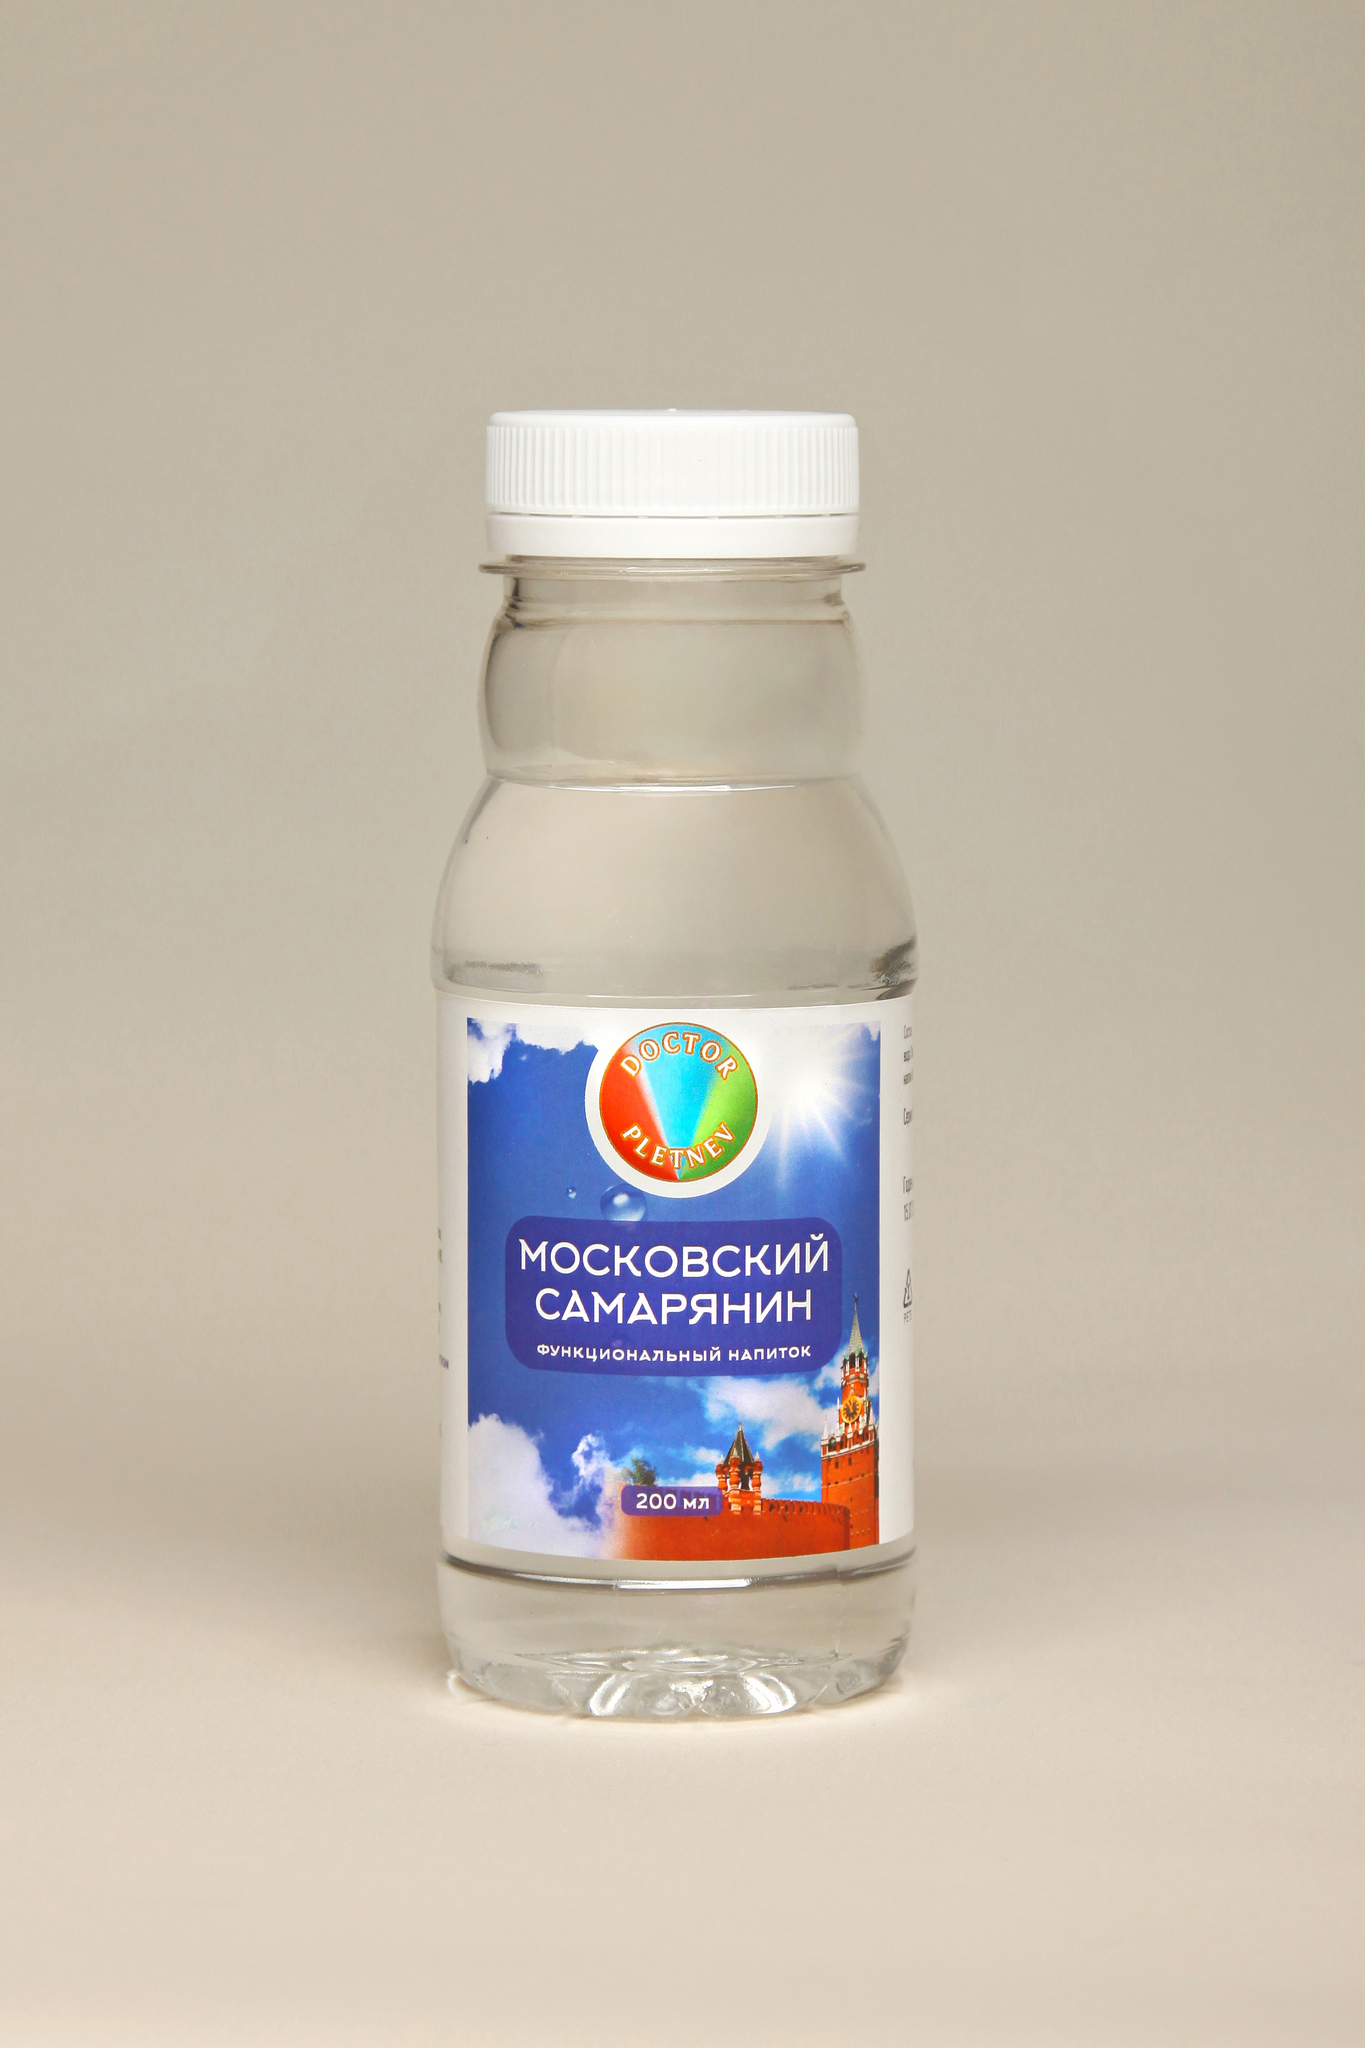 Функциональный напиток "Московский Самарянин"